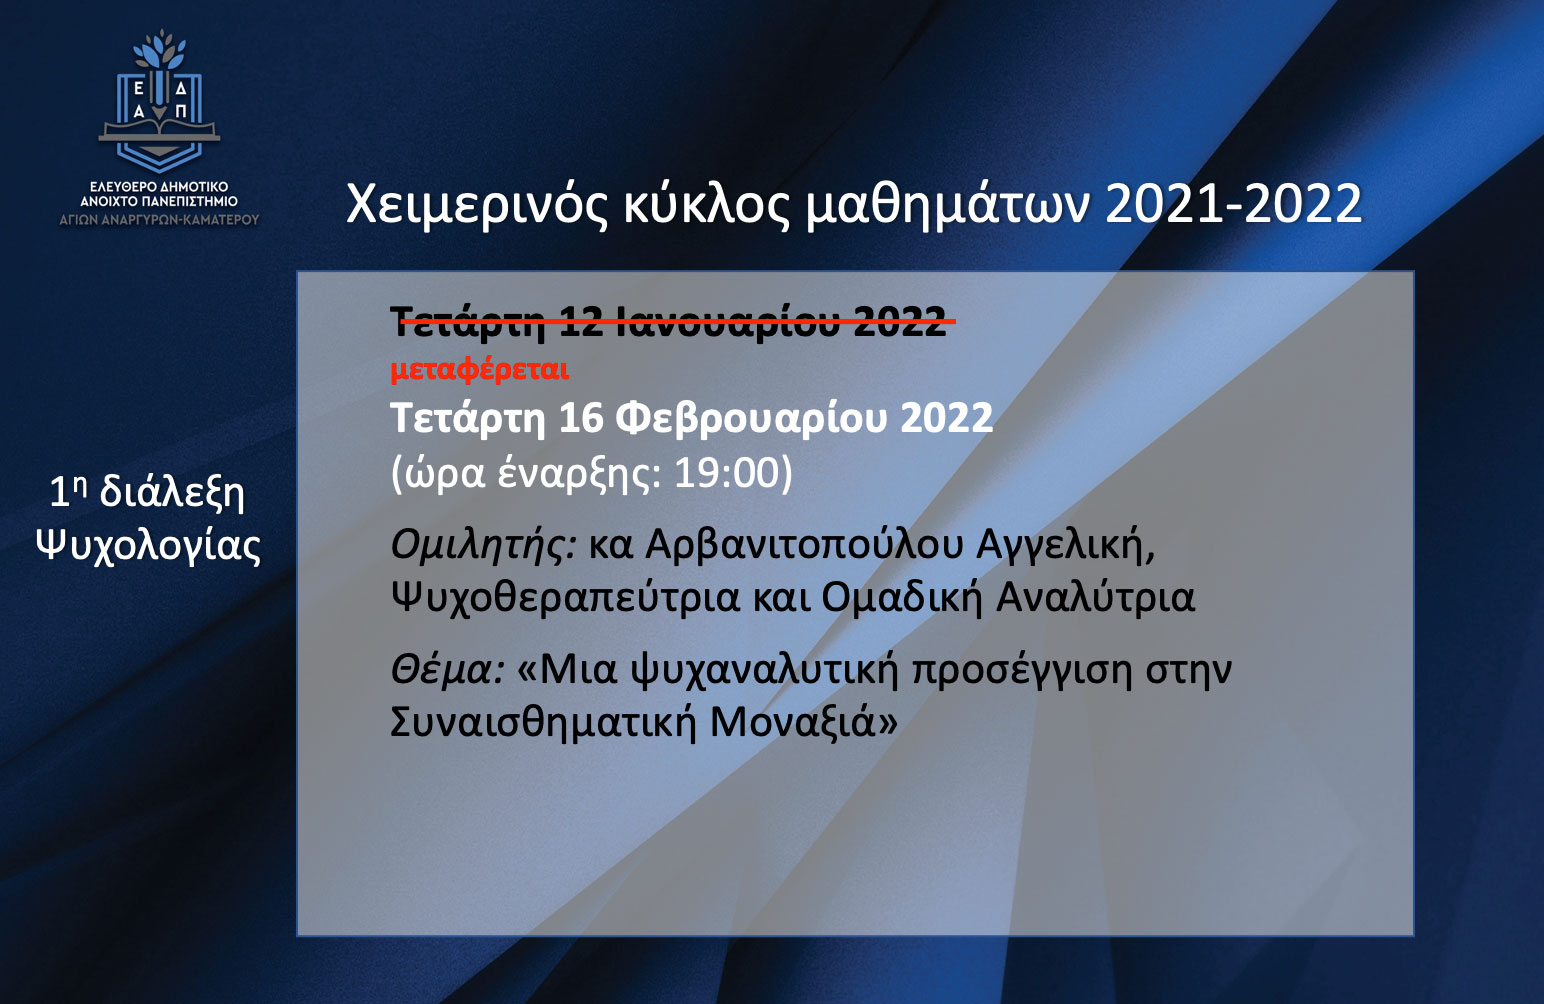 Αλλαγή ημερομηνίας των διαλέξεων του ΕΔΑΠ που ήταν προγραμματισμένες τον Ιανουάριο του 2022